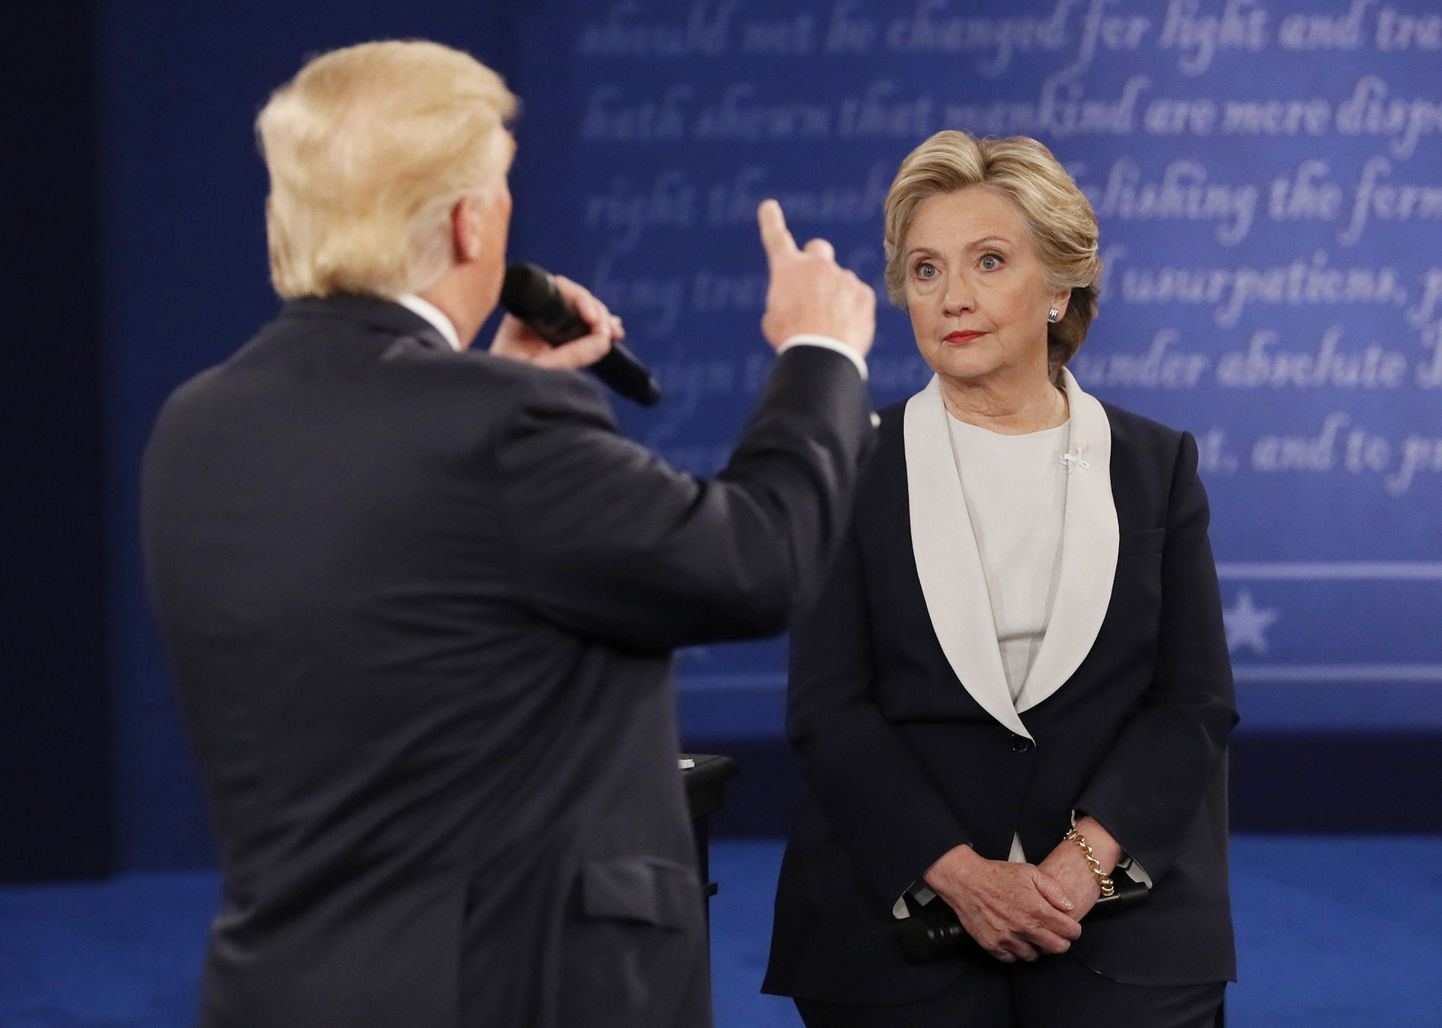 USA presidendikandidaadid Donald Trump ja Hillary Clinton tänasel debatil.